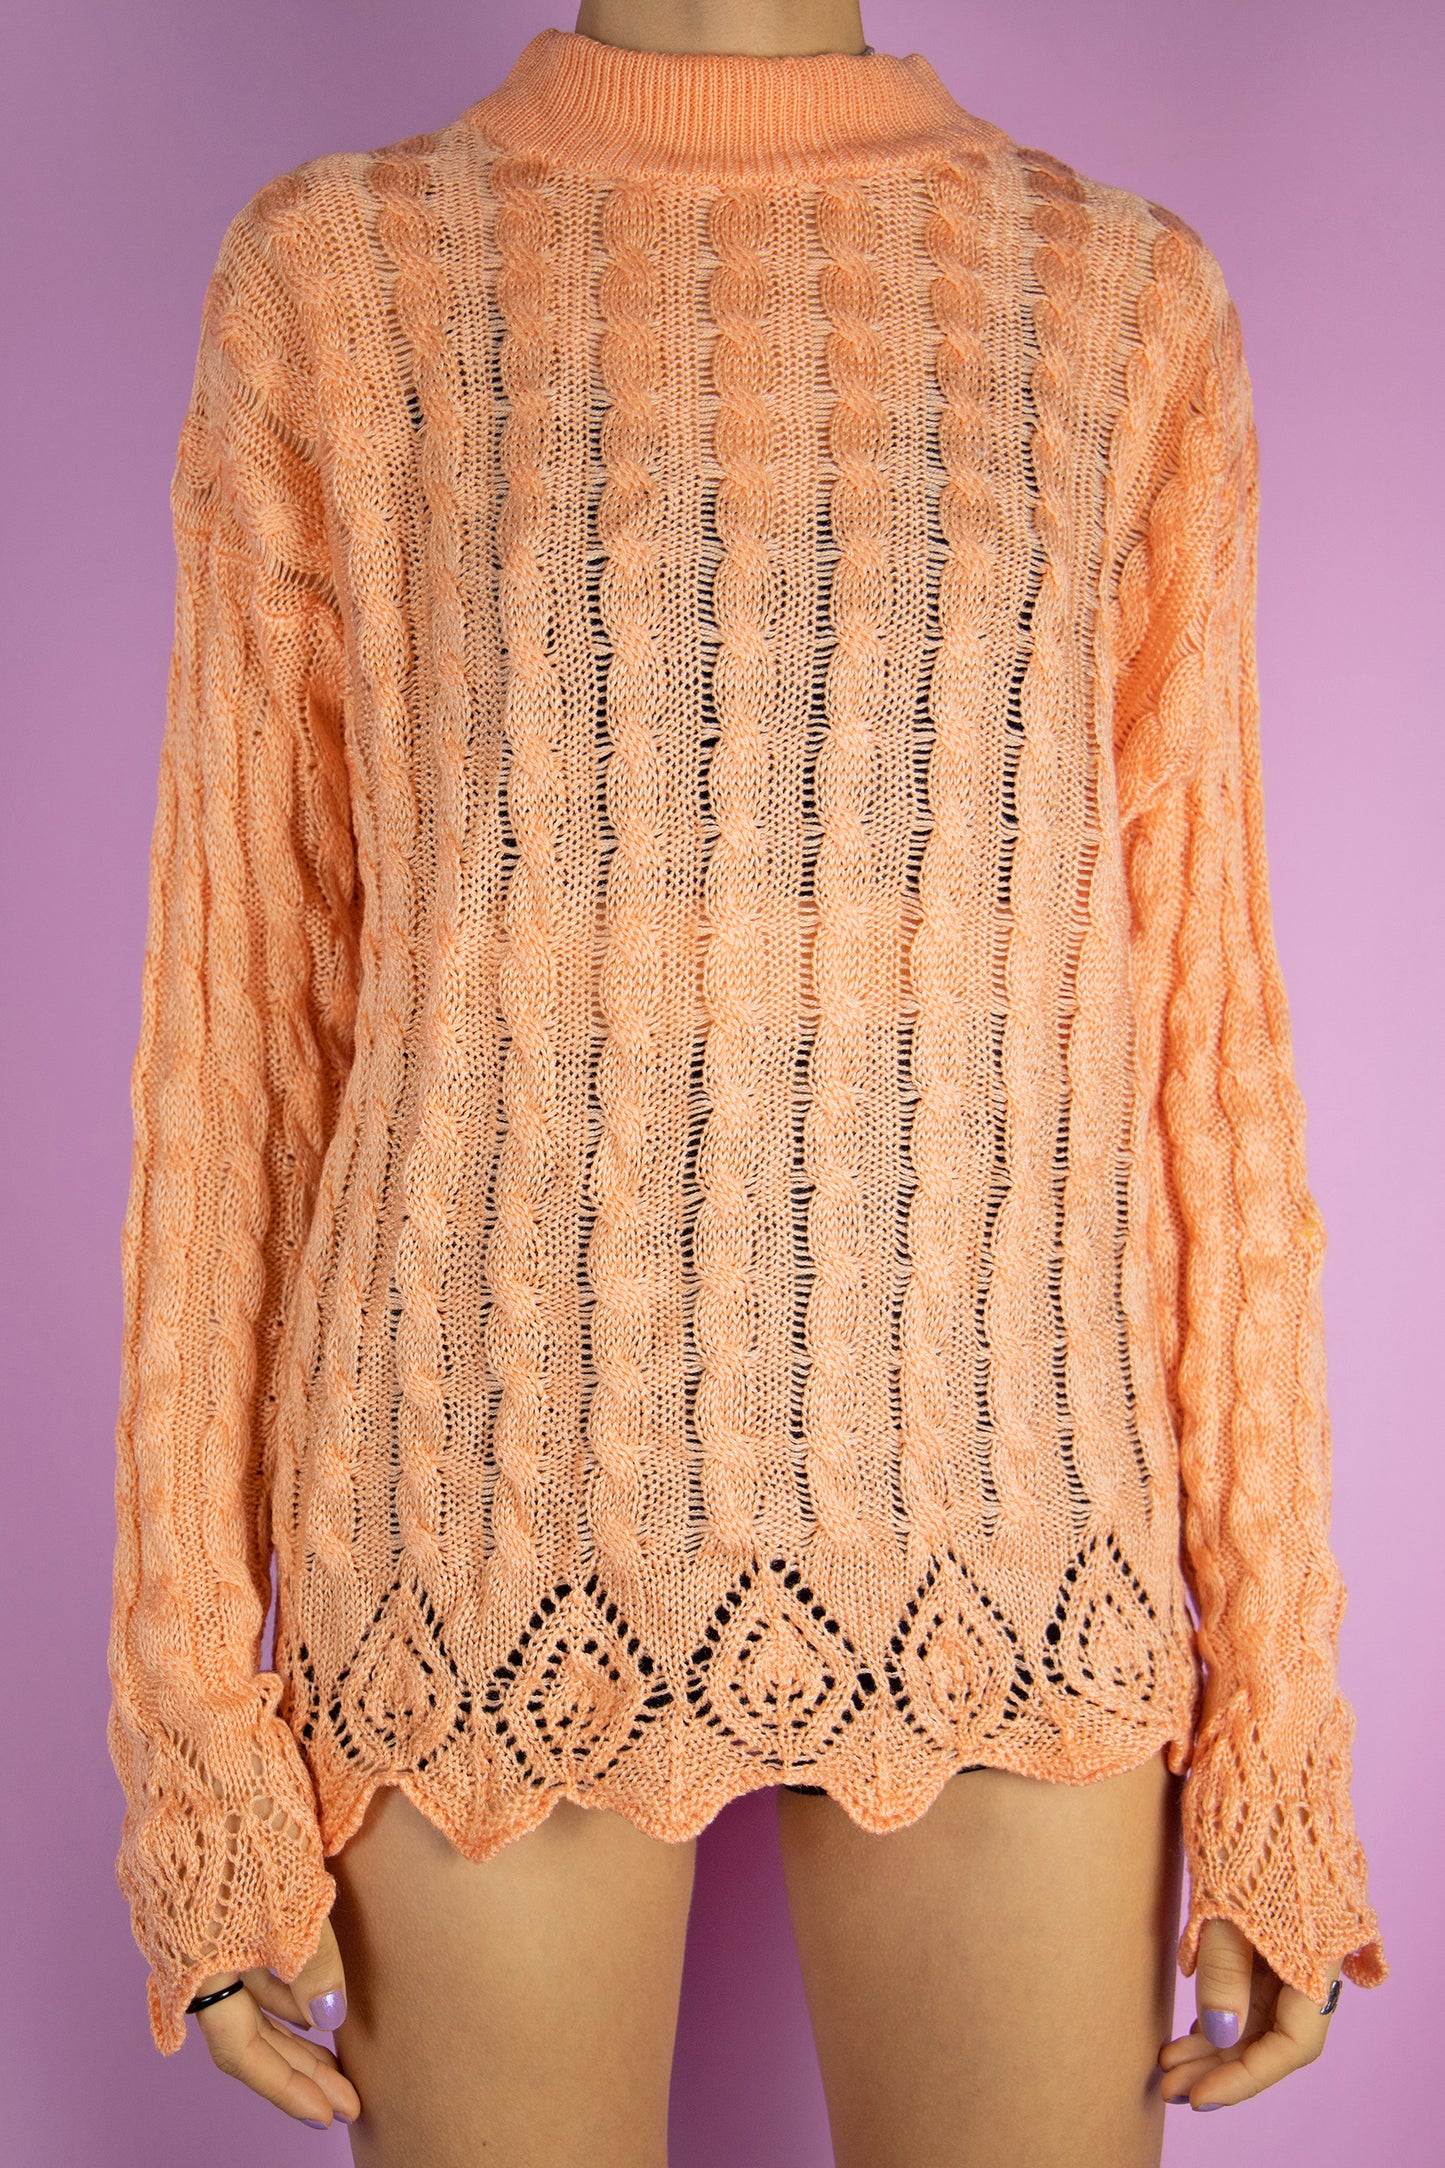 Vintage 80's Orange Cable Knit Sweater - M/L